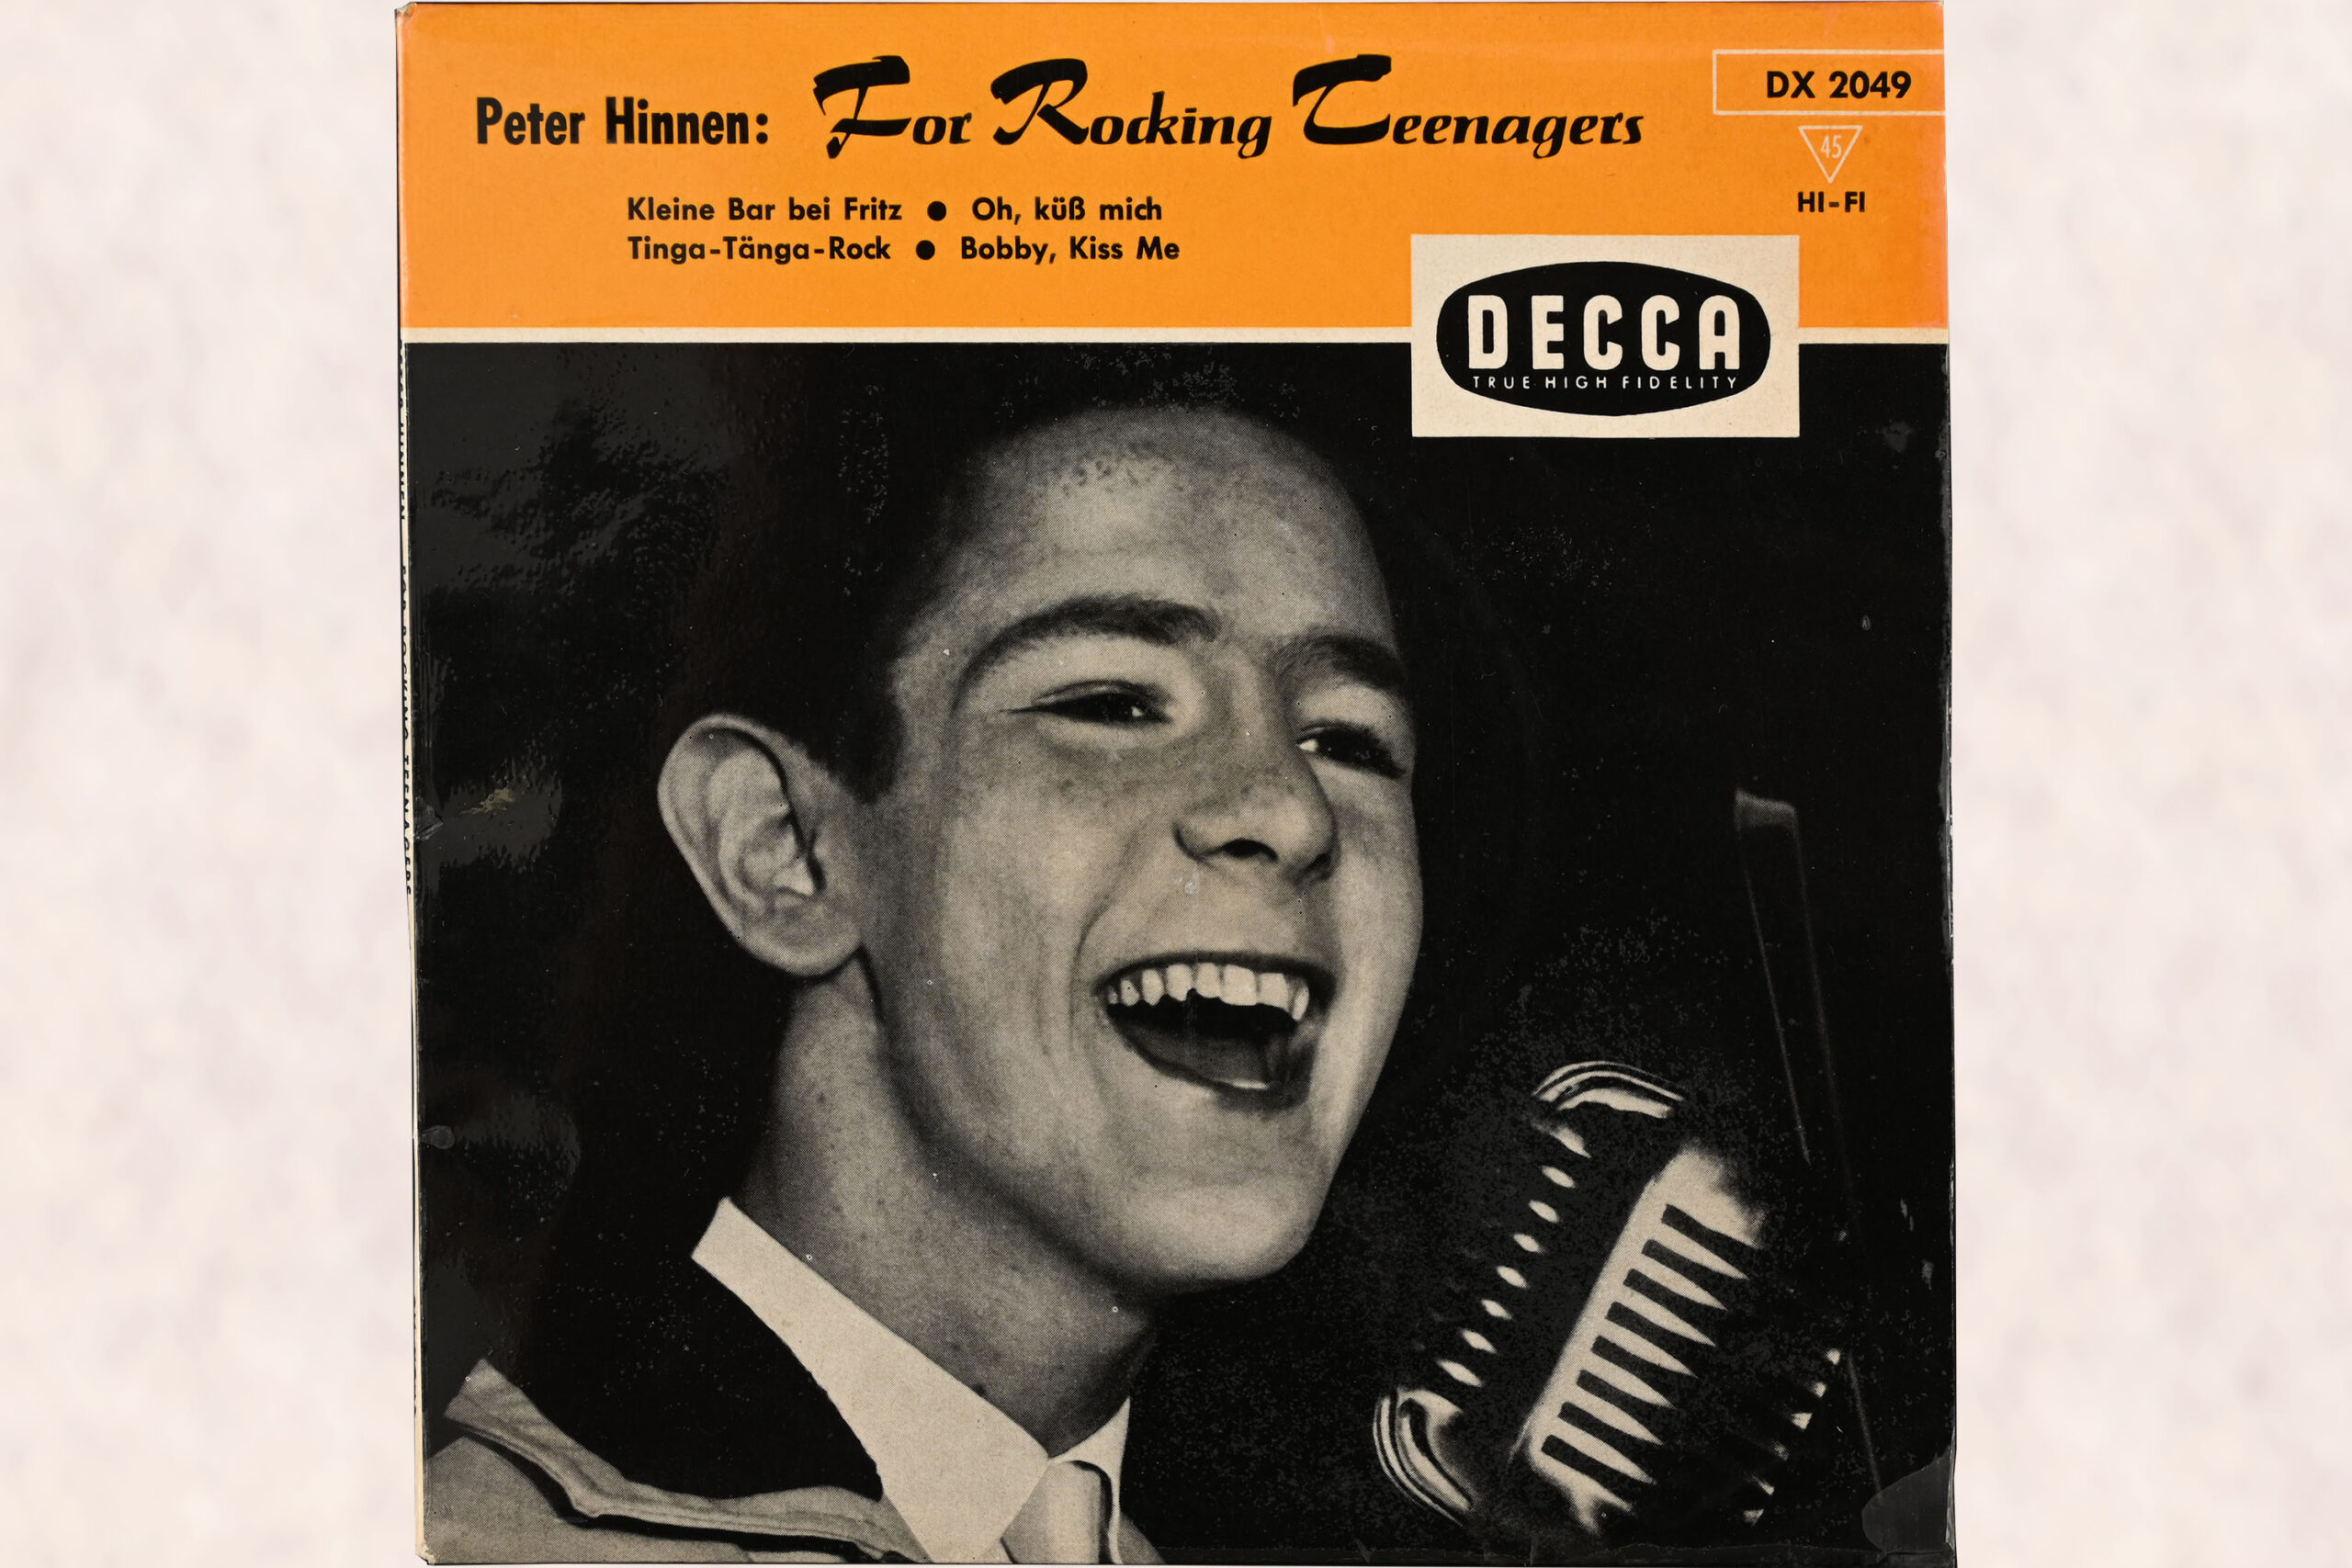 Cover einer Schallplattenhülle, auf dem ein schwarz-weiss Foto von Peter Hinnen zu sehen ist, der in ein Mikrofon singt; auf einem orangen Balken am oberen Rand steht der Titel der EP "For Rocking Teenagers" und ist ein grosses Logo der Plattenfirma Decca angebracht.